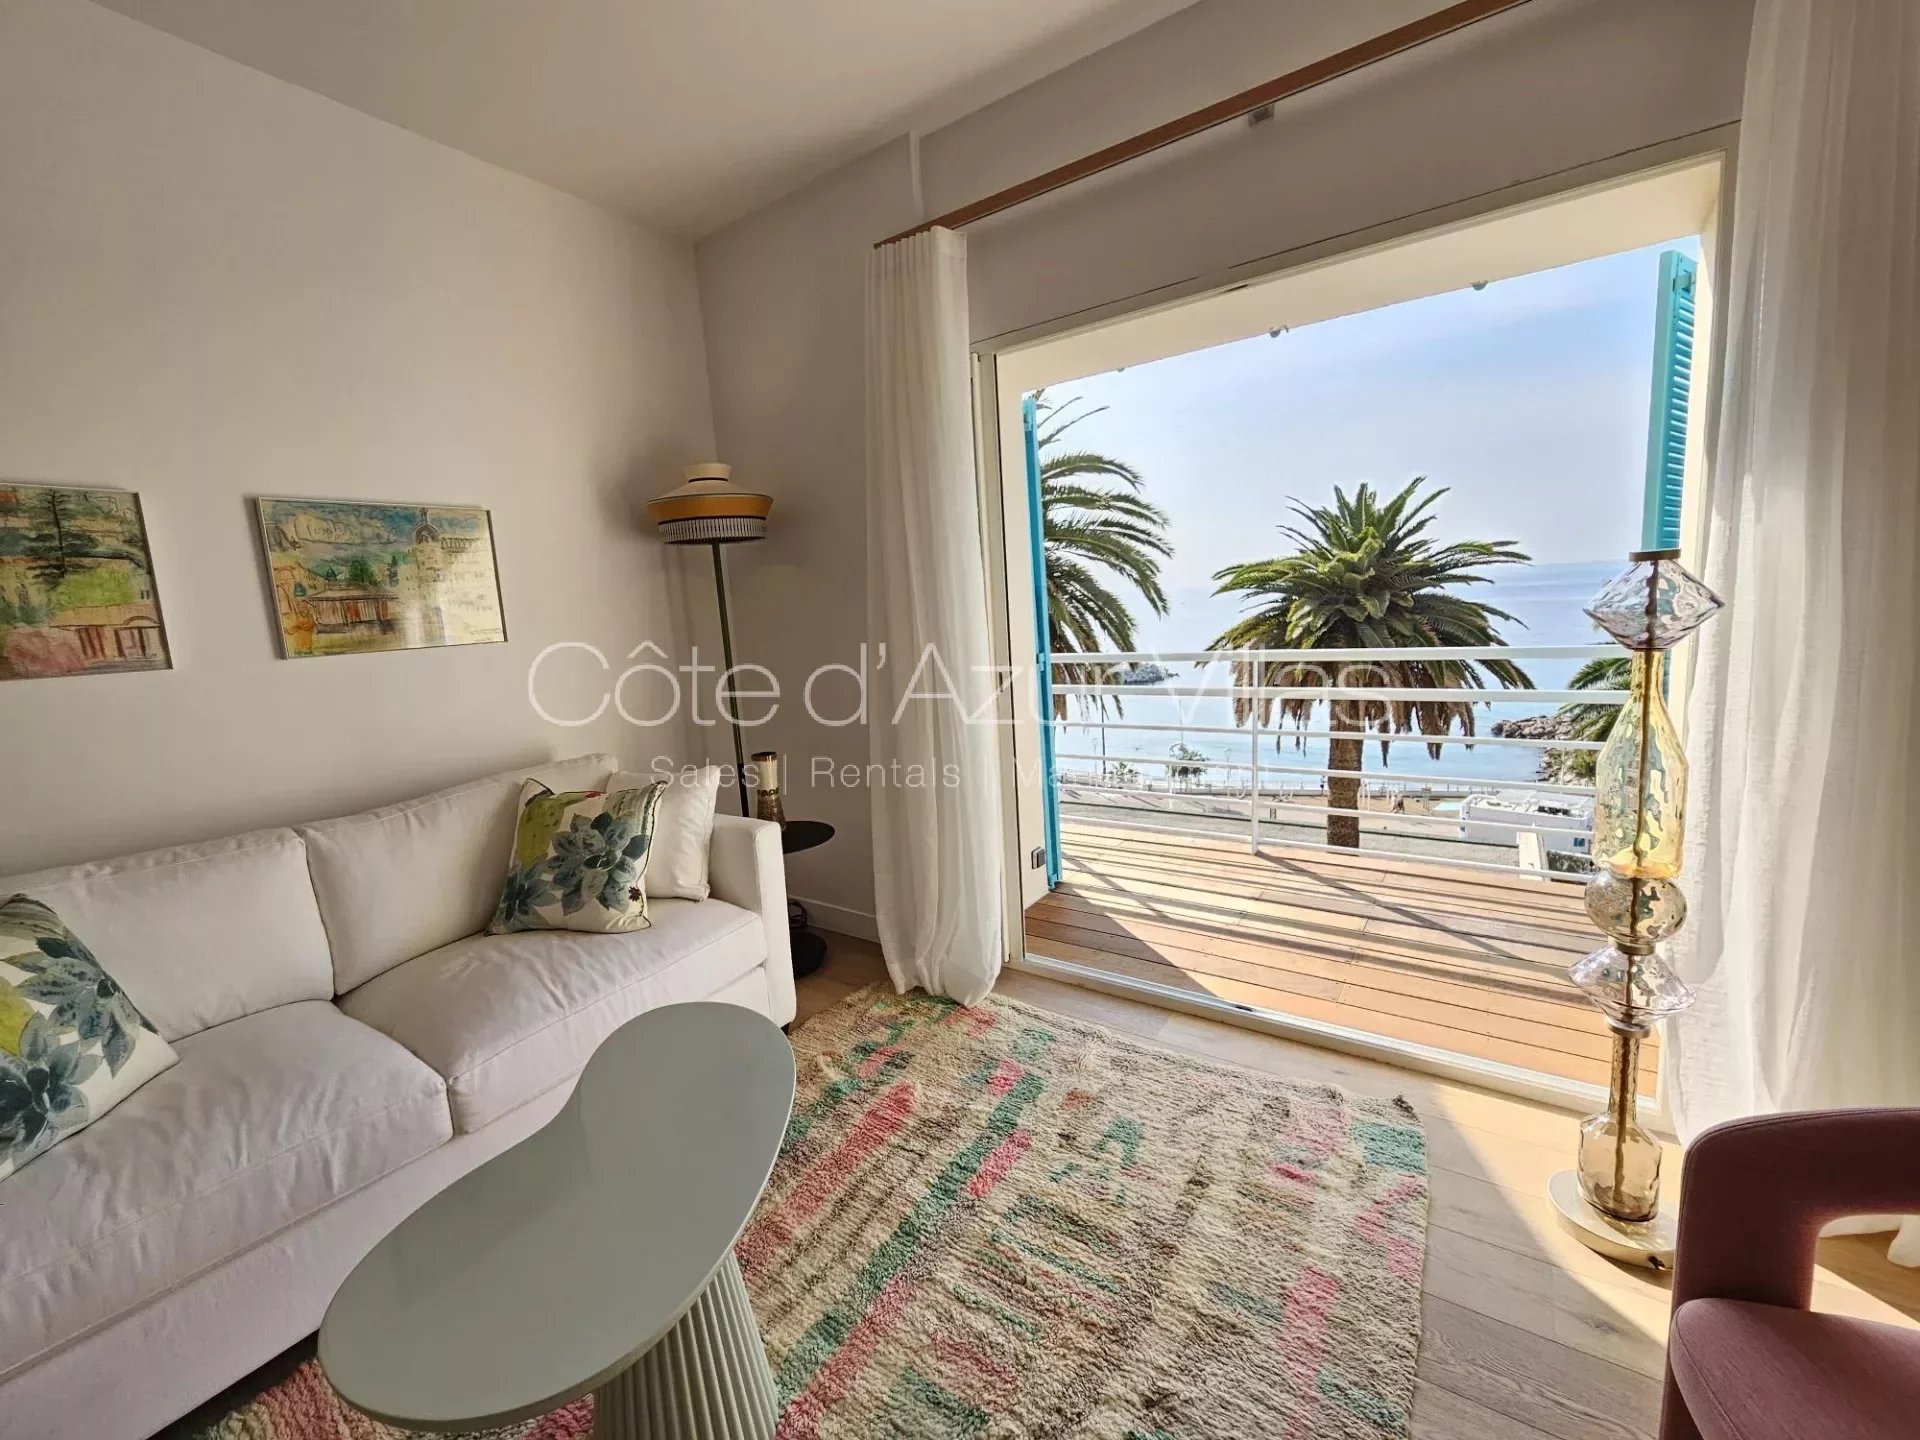 Vente Appartement 65m² 3 Pièces à Cannes (06400) - Cote d'Azur Villas